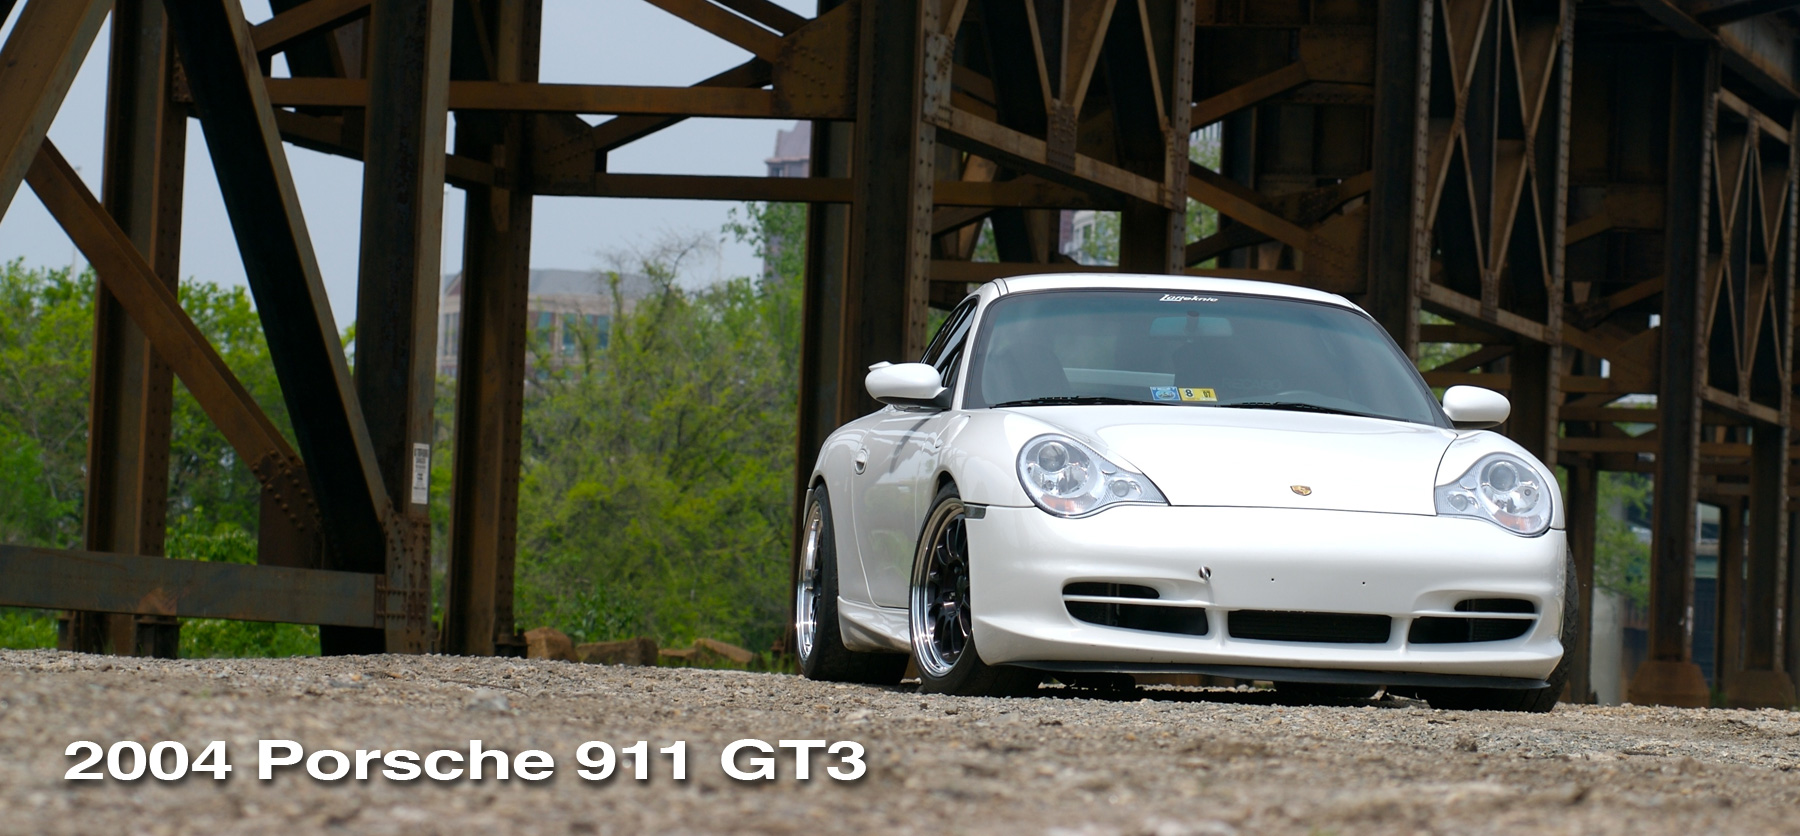 White 996 Porsche Gt3 header image.